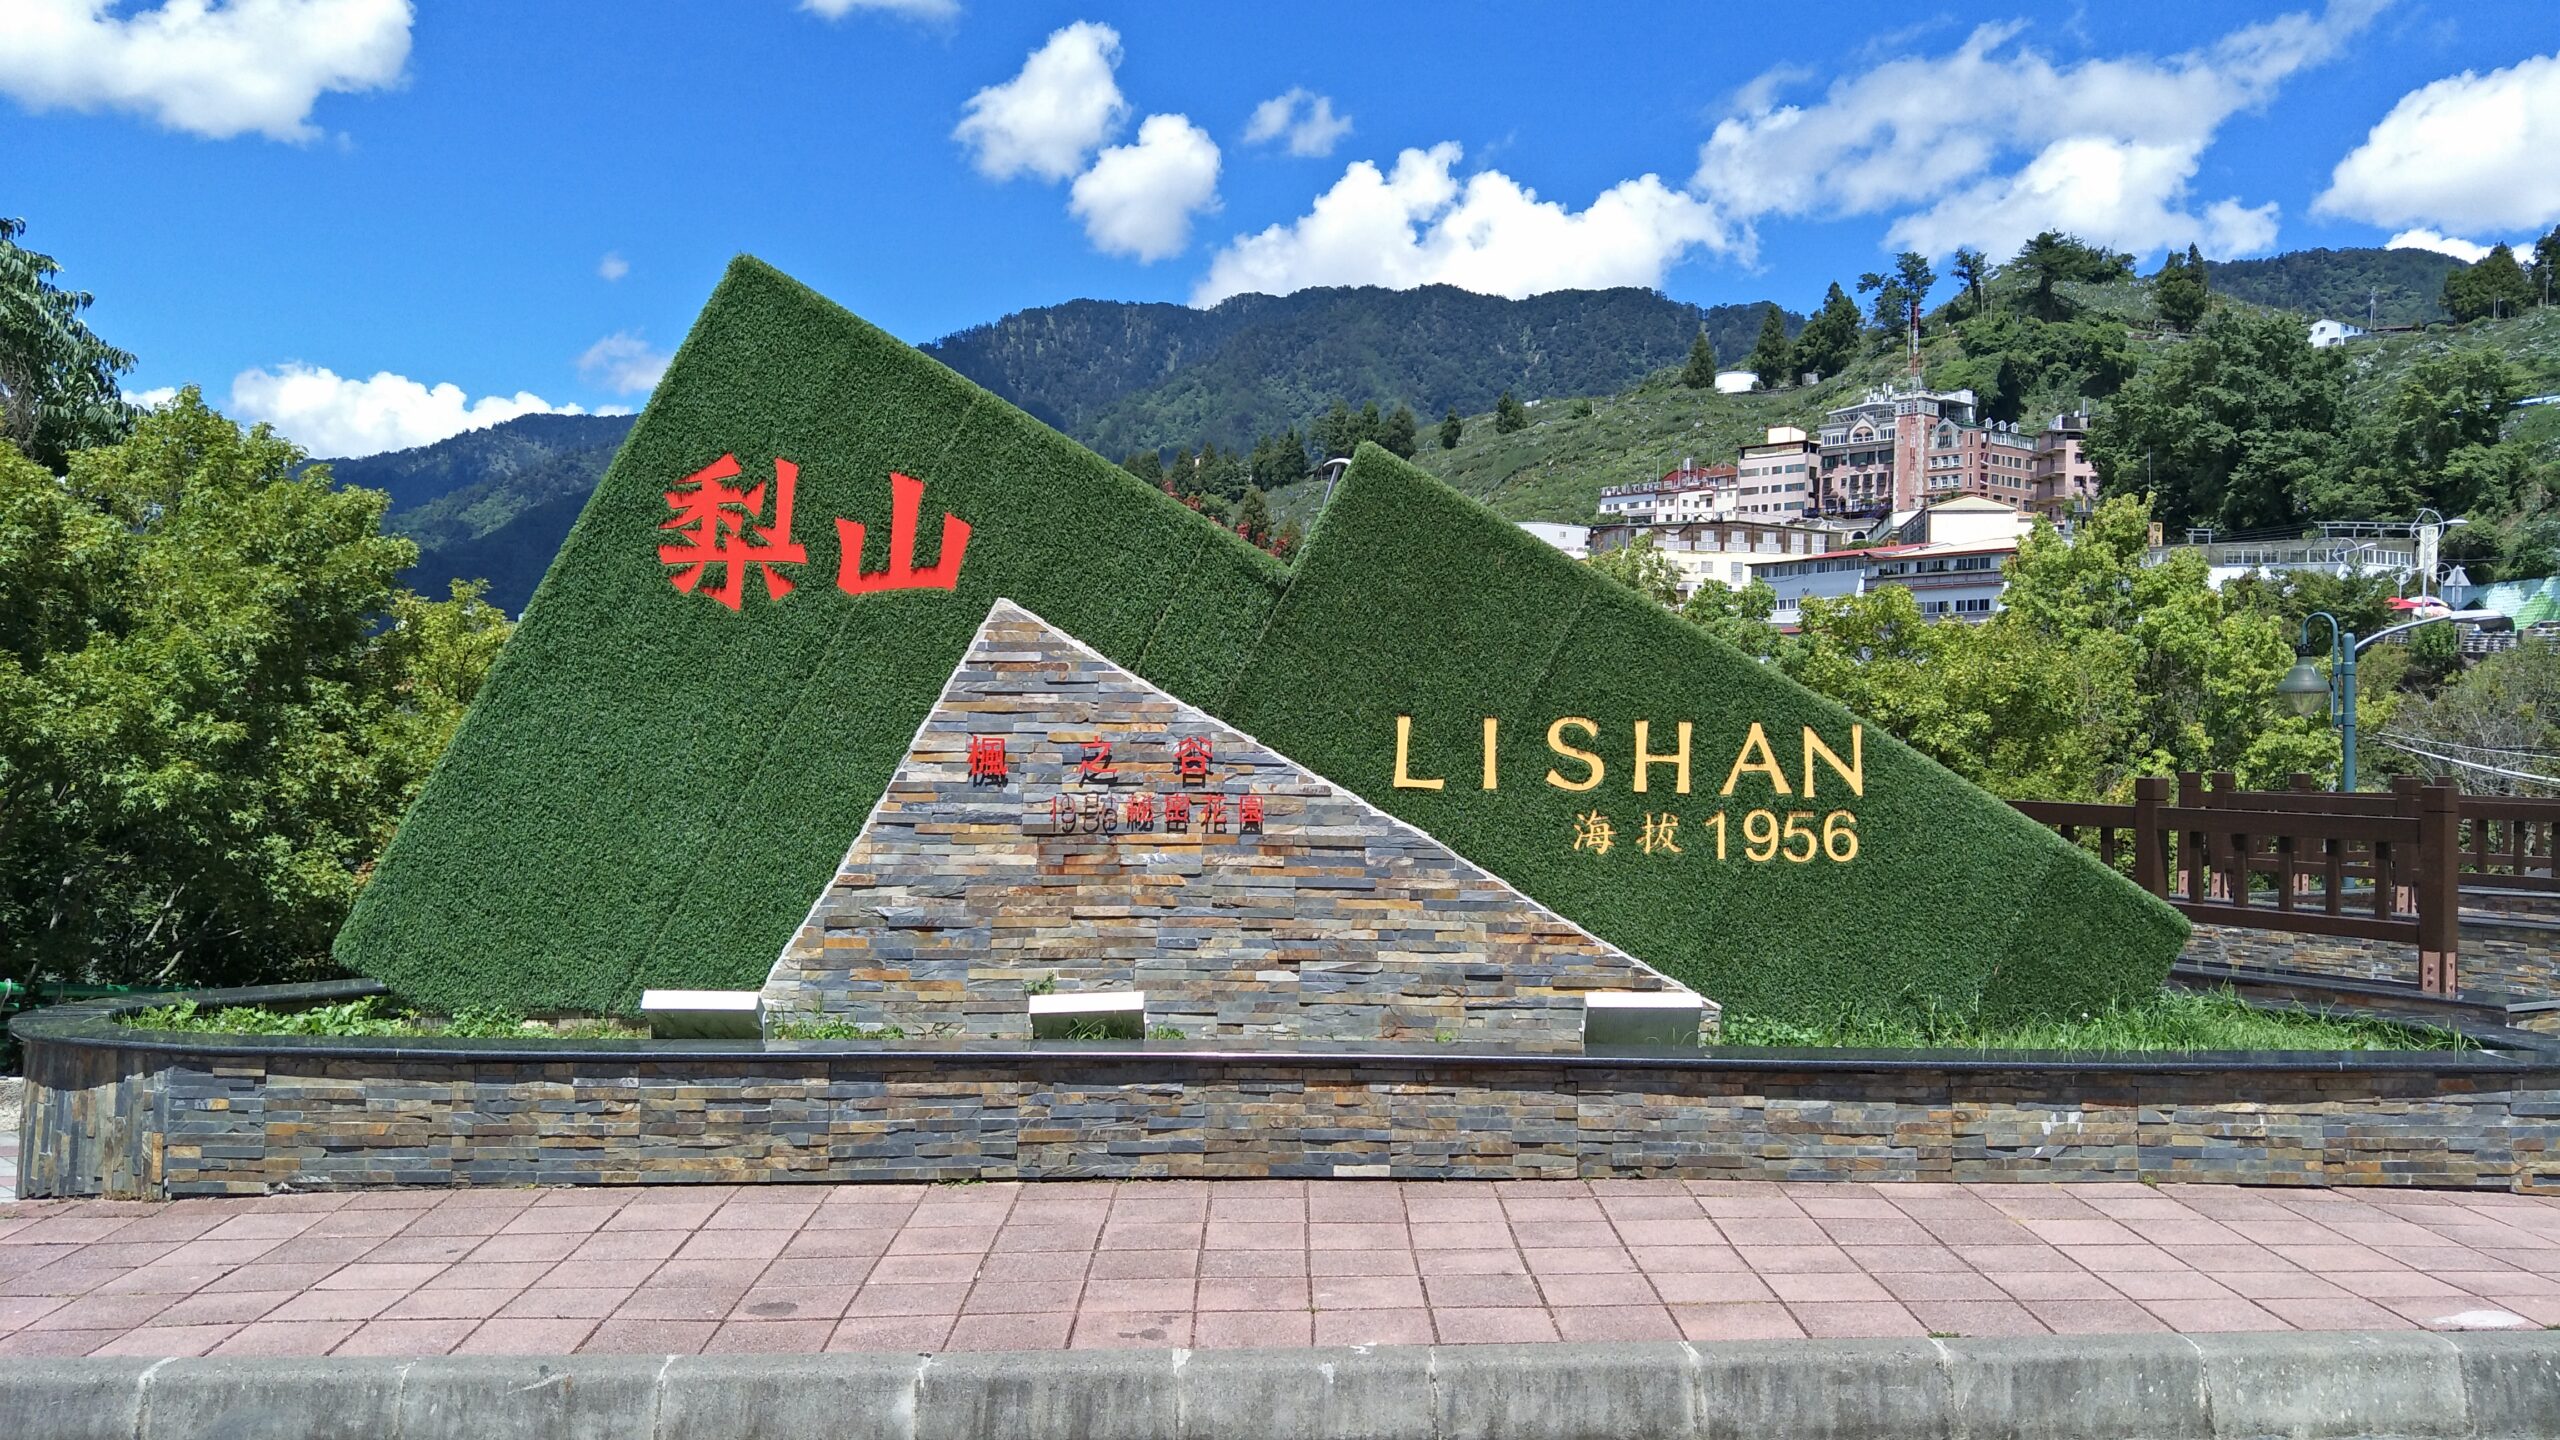 Nghỉ ngơi chân núi Lishan 梨山休息